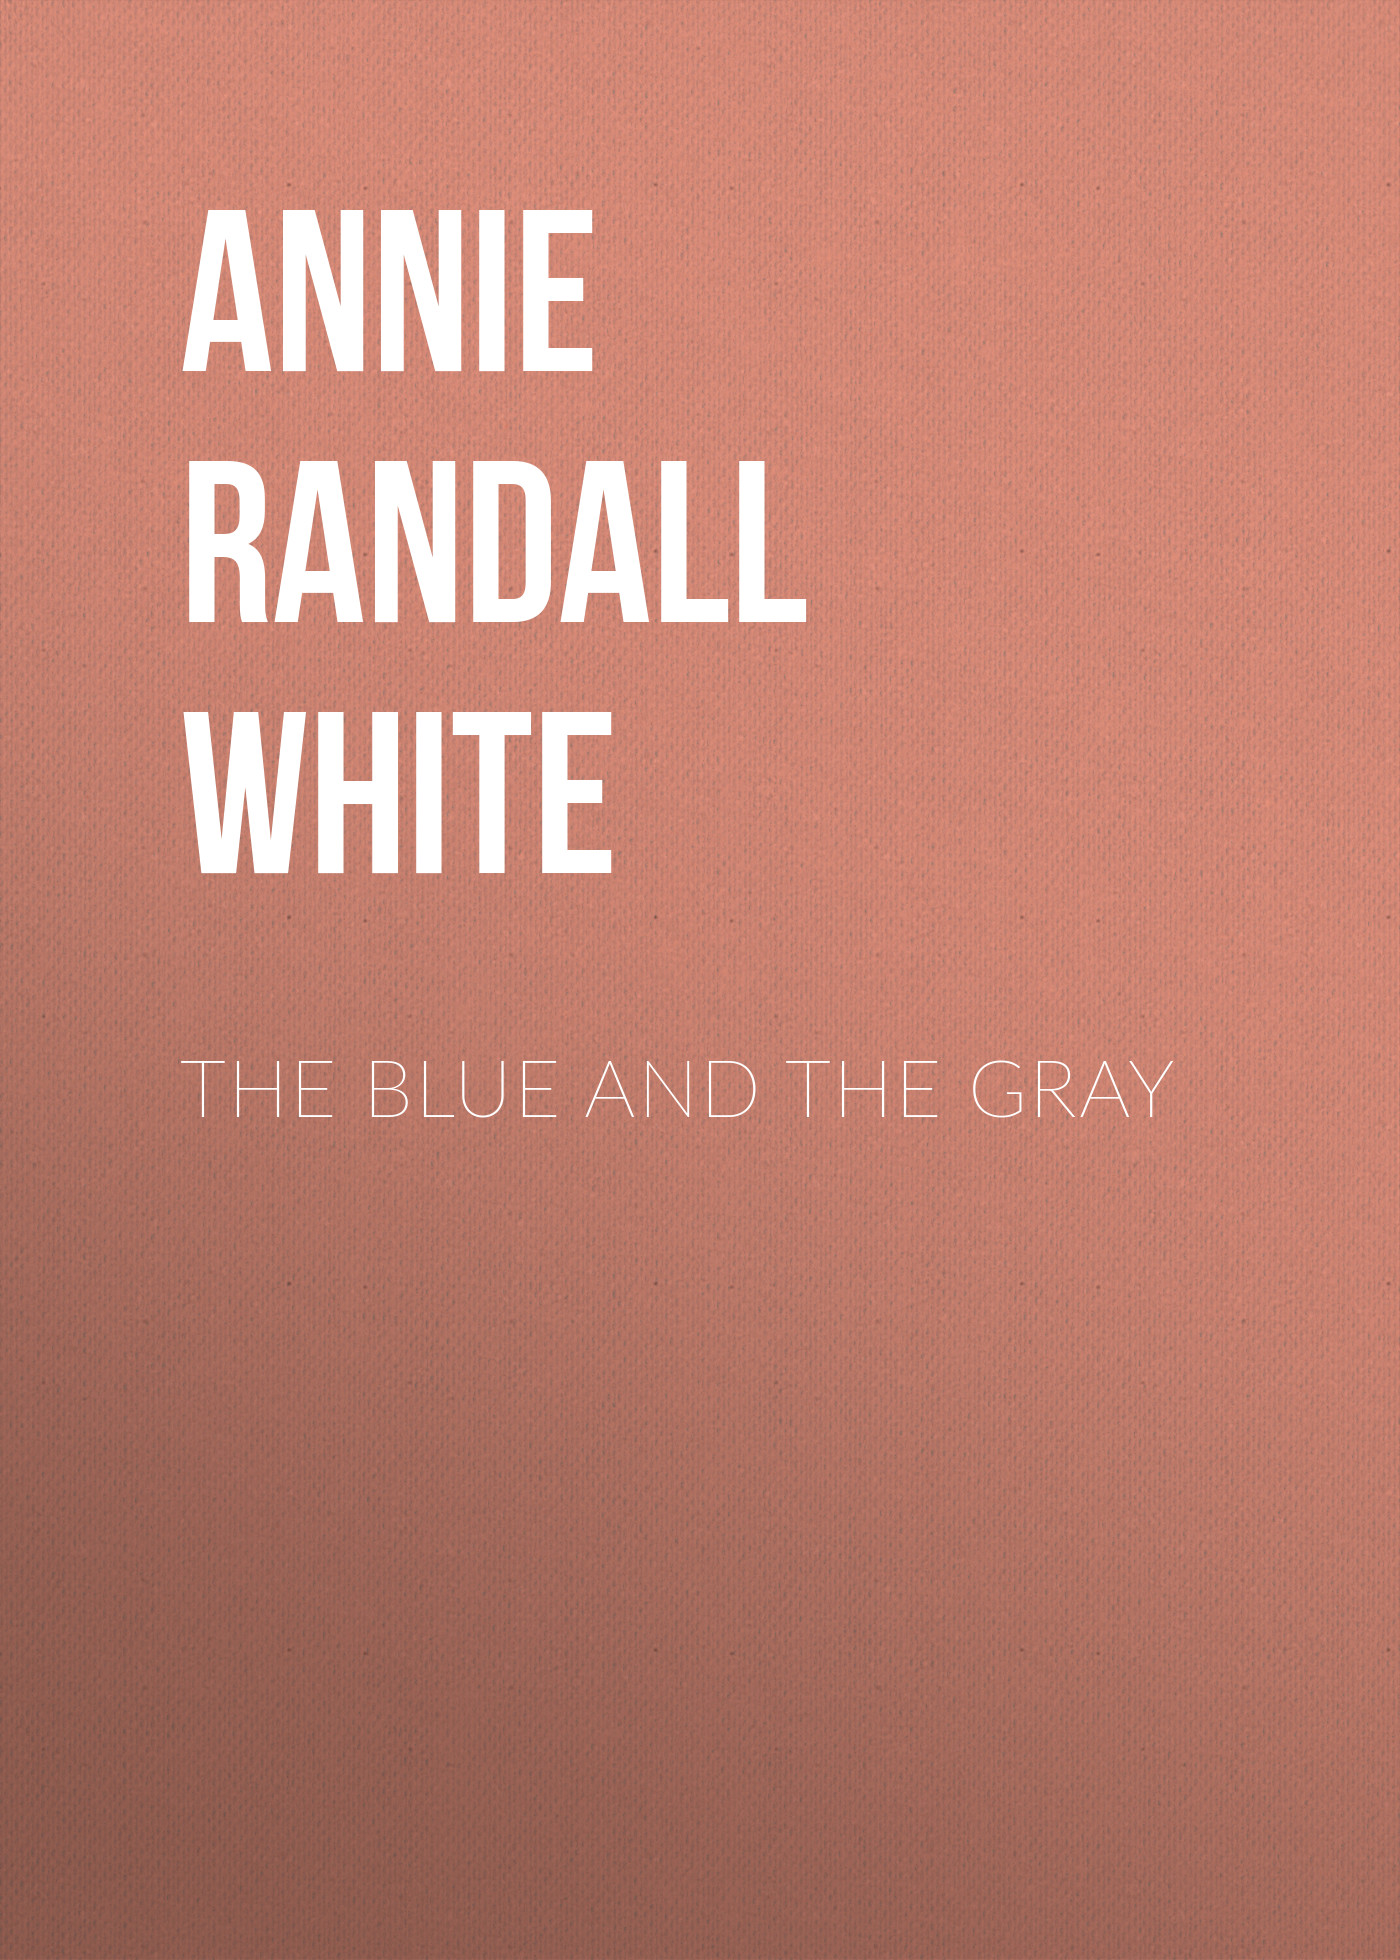 Книга The Blue and The Gray из серии , созданная Annie Randall White, может относится к жанру Зарубежная классика, История, Зарубежная образовательная литература, Зарубежная старинная литература. Стоимость электронной книги The Blue and The Gray с идентификатором 34336642 составляет 0 руб.